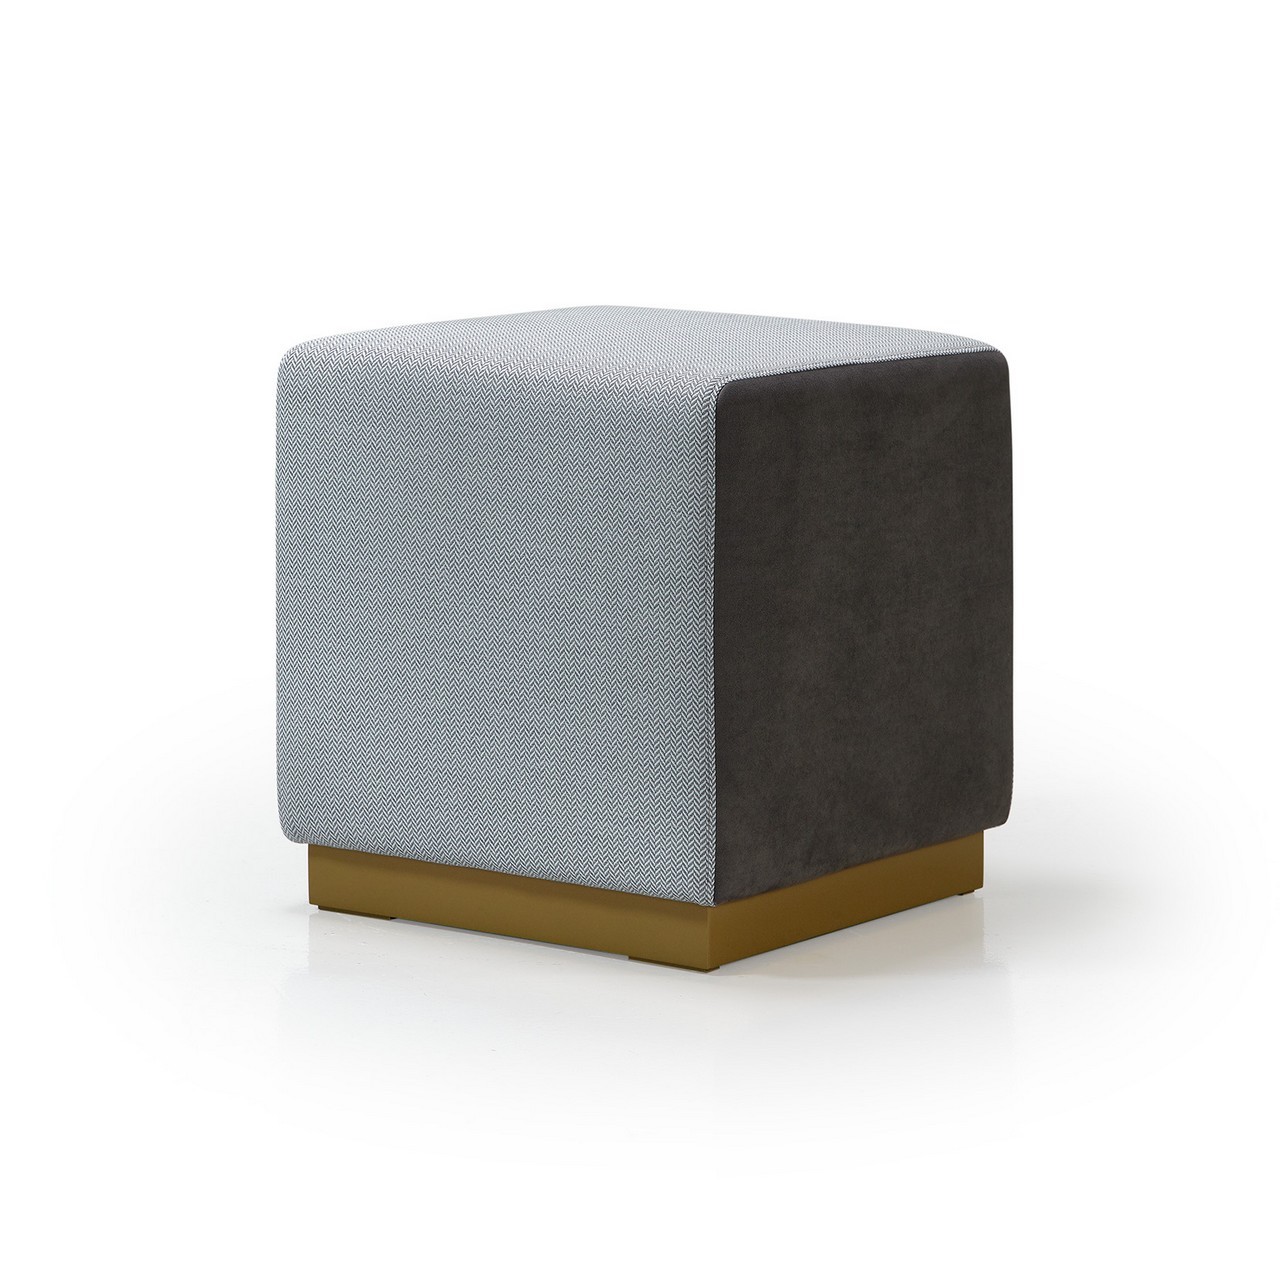 O puff estofado quadrado é versátil pode servir de elemento decorativo ou de assento extra para momentos de descontração.